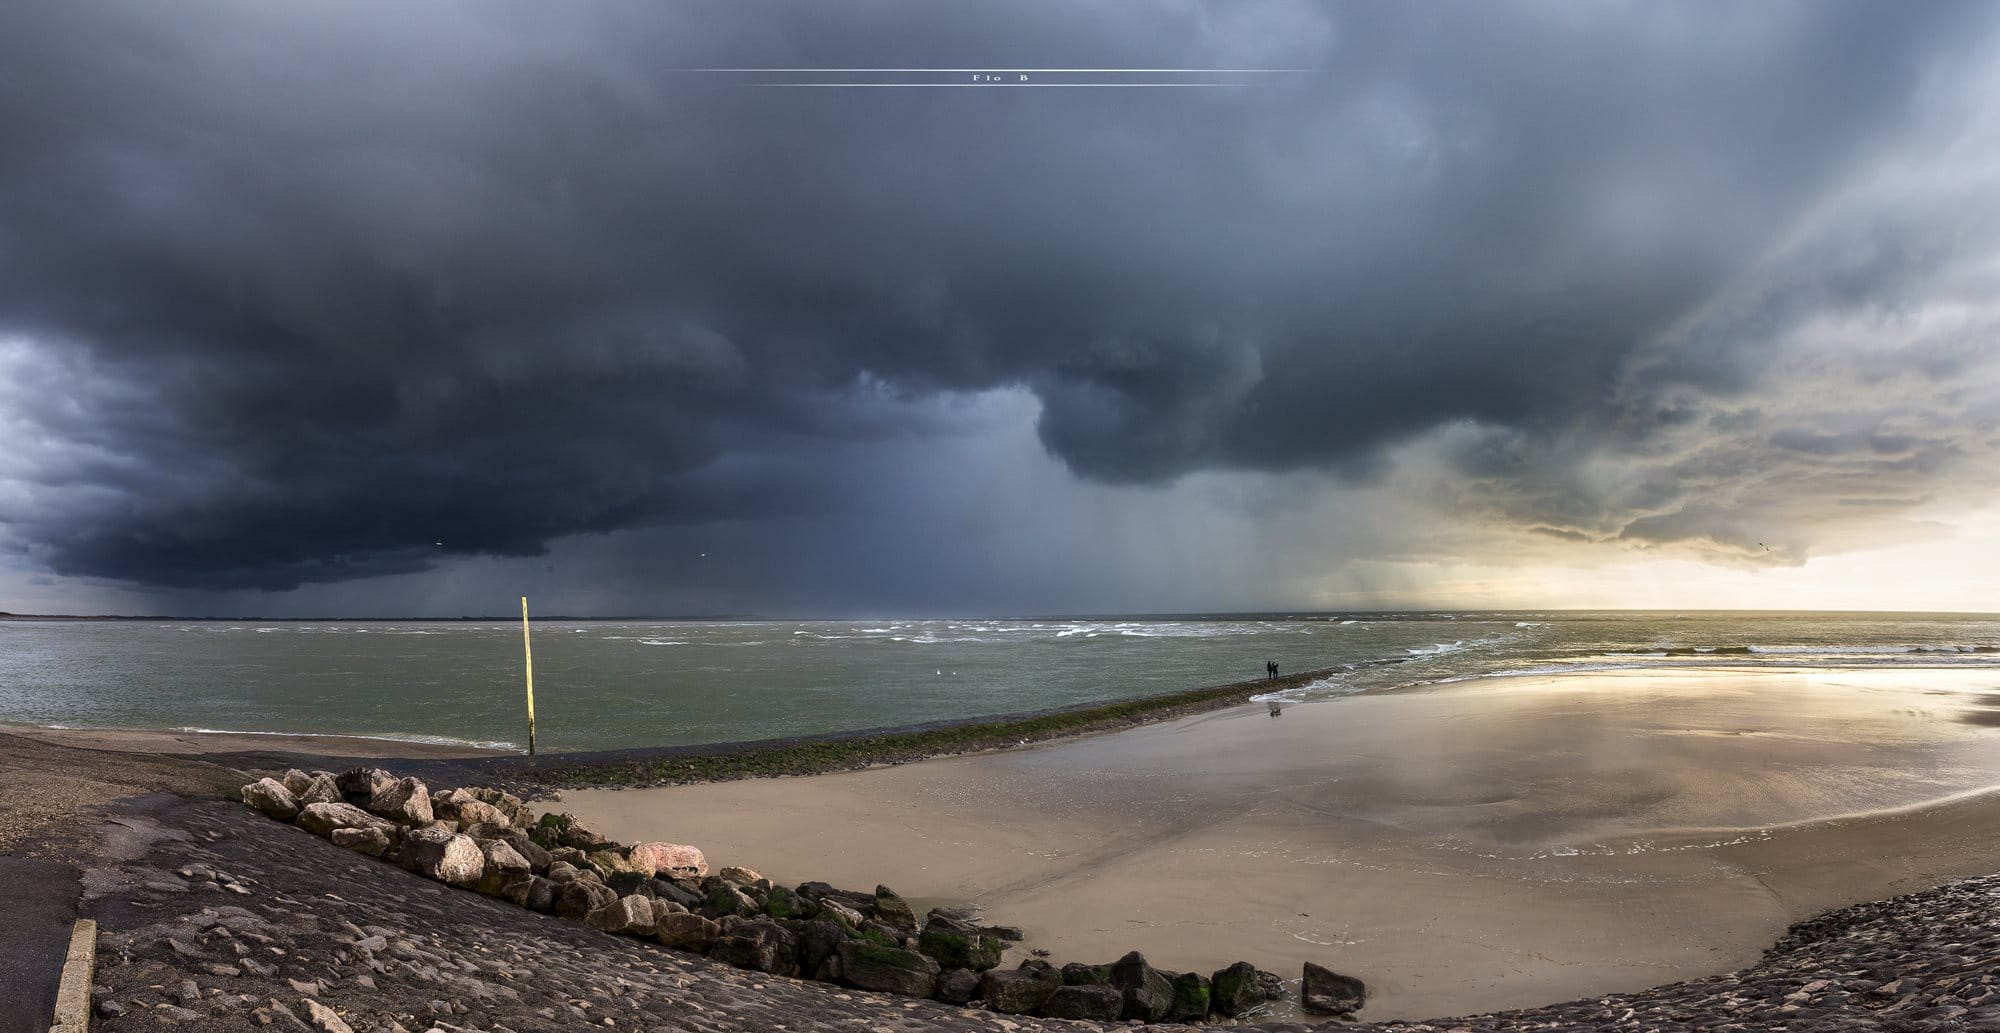 Panorama de 3 photos de la Baie d'Authie à Berck-sur-Mer dans le Pas-de-Calais - 04/04/2018 13:00 -  Flo B